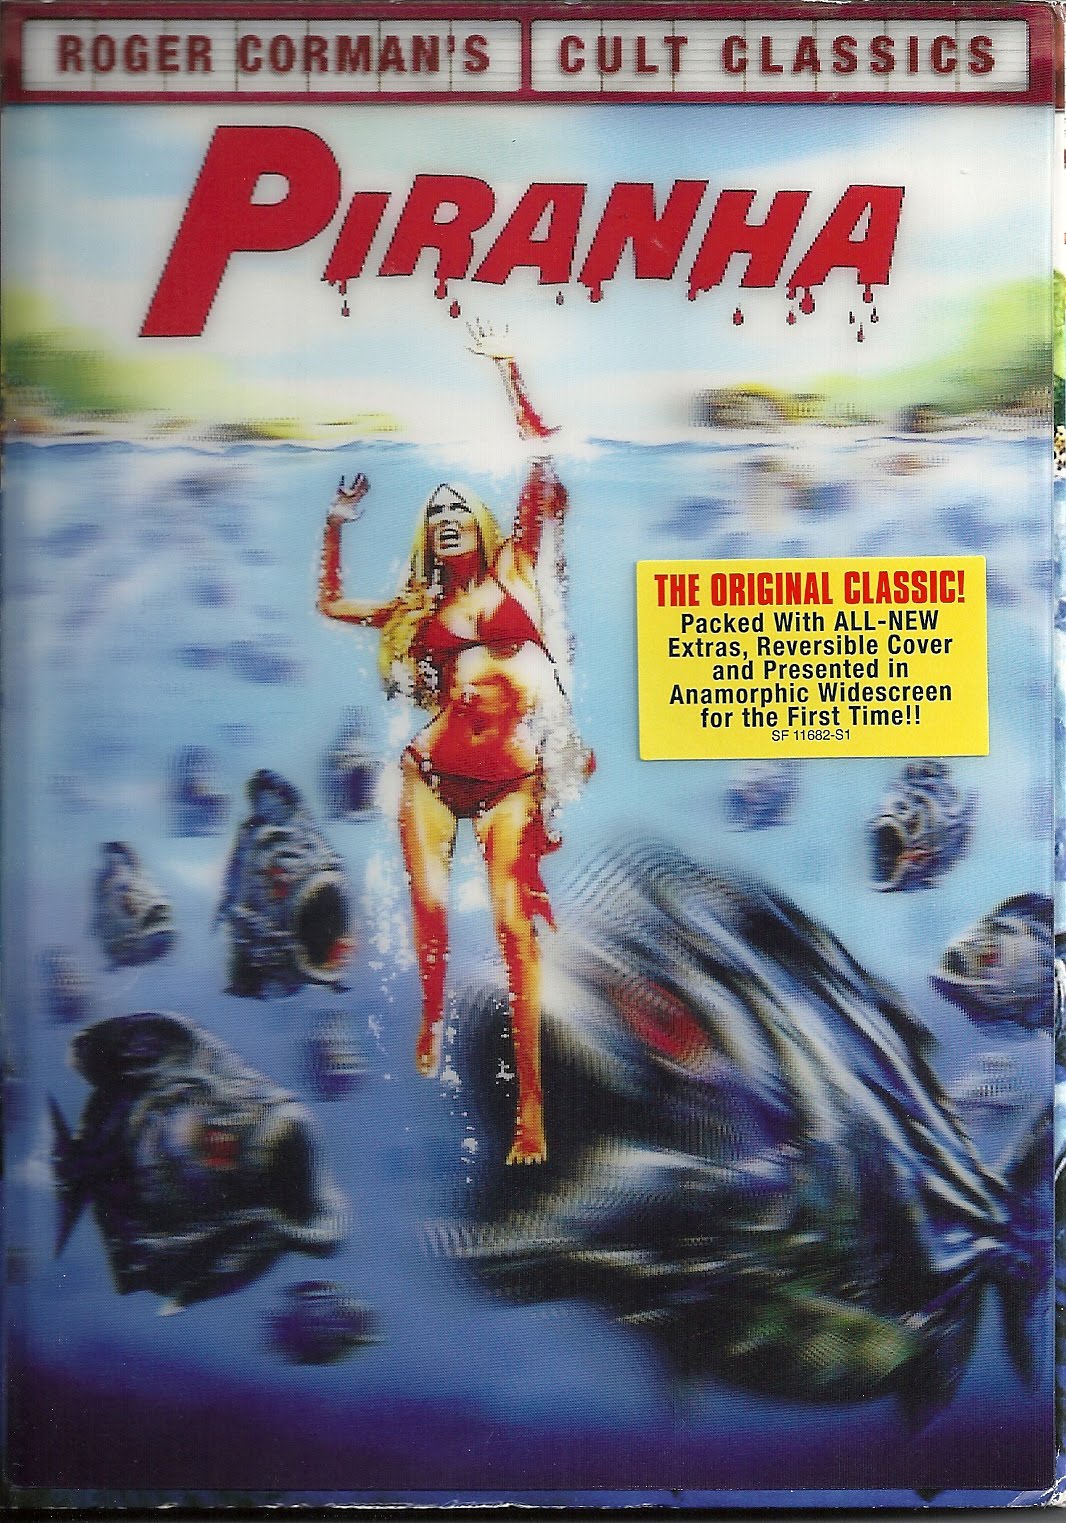 PIRAÑA - PIRANHA (1978)